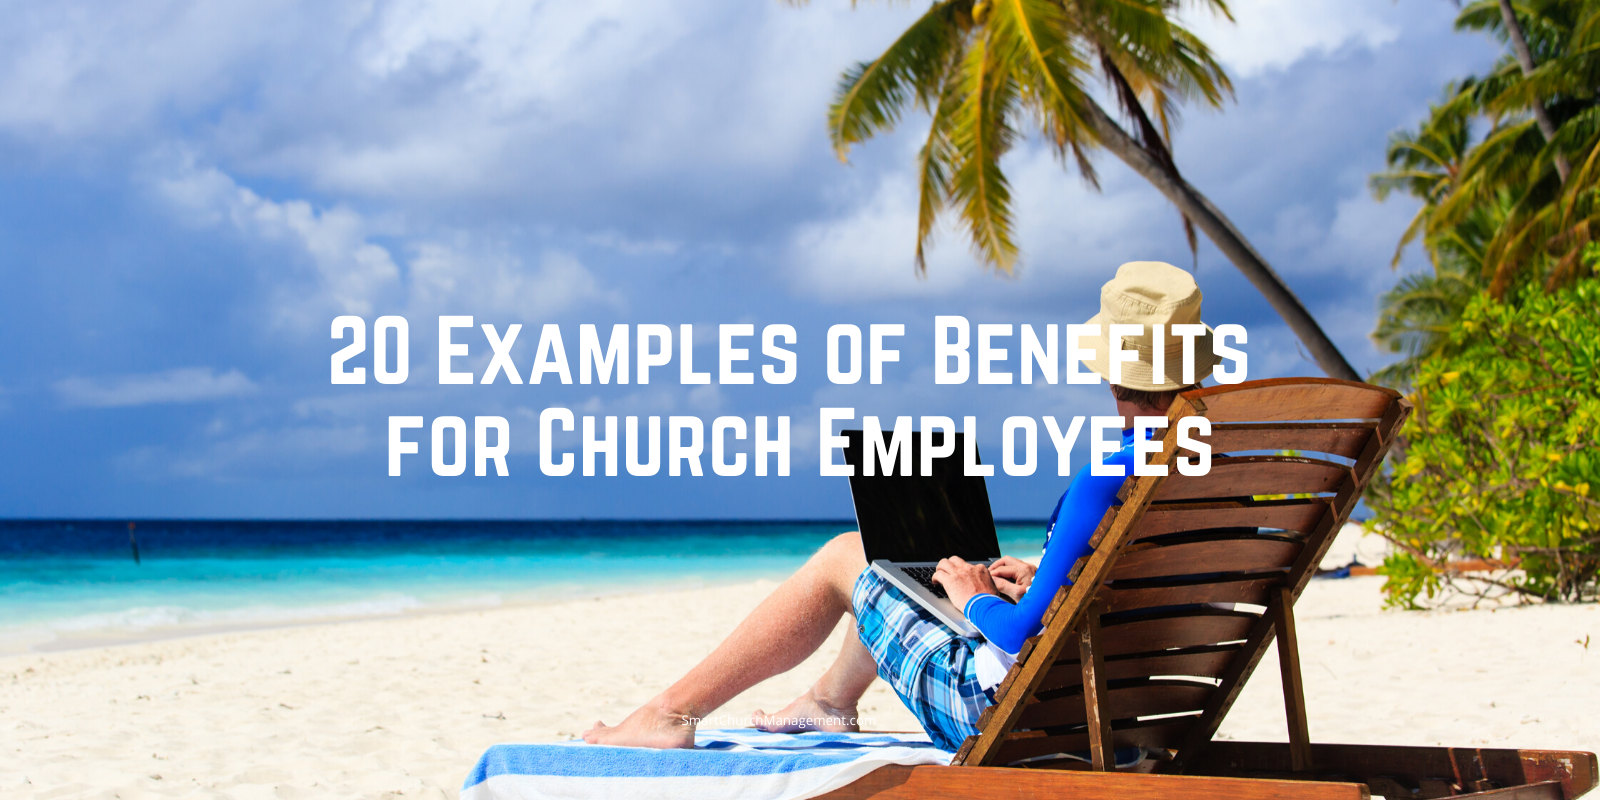 教会应该为员工提供什么样的福利